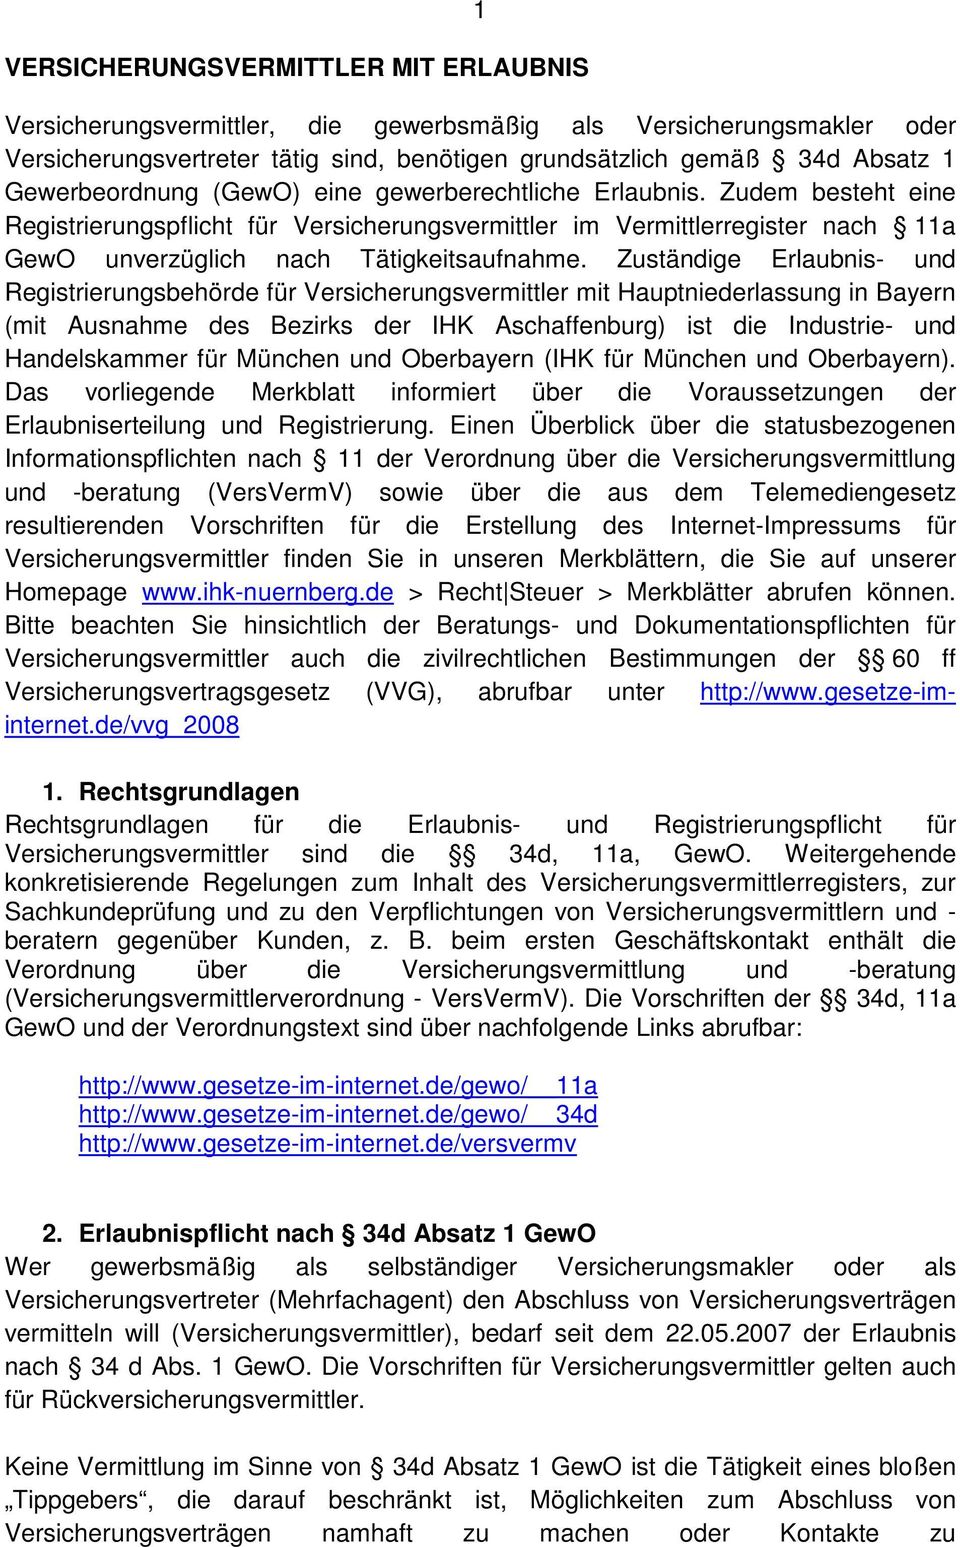 Zuständige Erlaubnis- und Registrierungsbehörde für Versicherungsvermittler mit Hauptniederlassung in Bayern (mit Ausnahme des Bezirks der IHK Aschaffenburg) ist die Industrie- und Handelskammer für